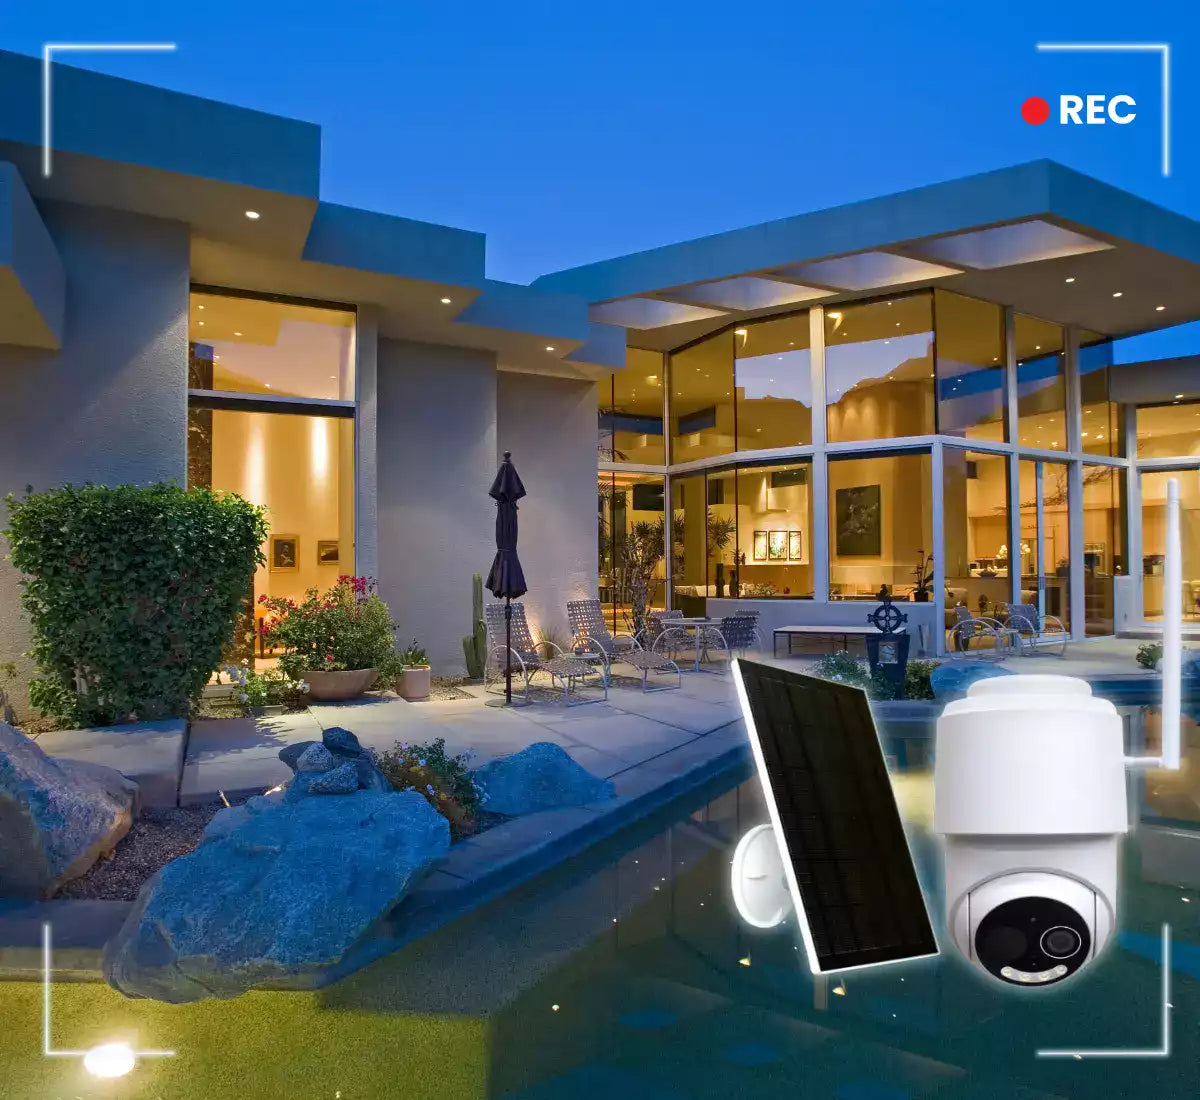 camera de surveillance sans fil exterieur maison et appartement - daewoo security 